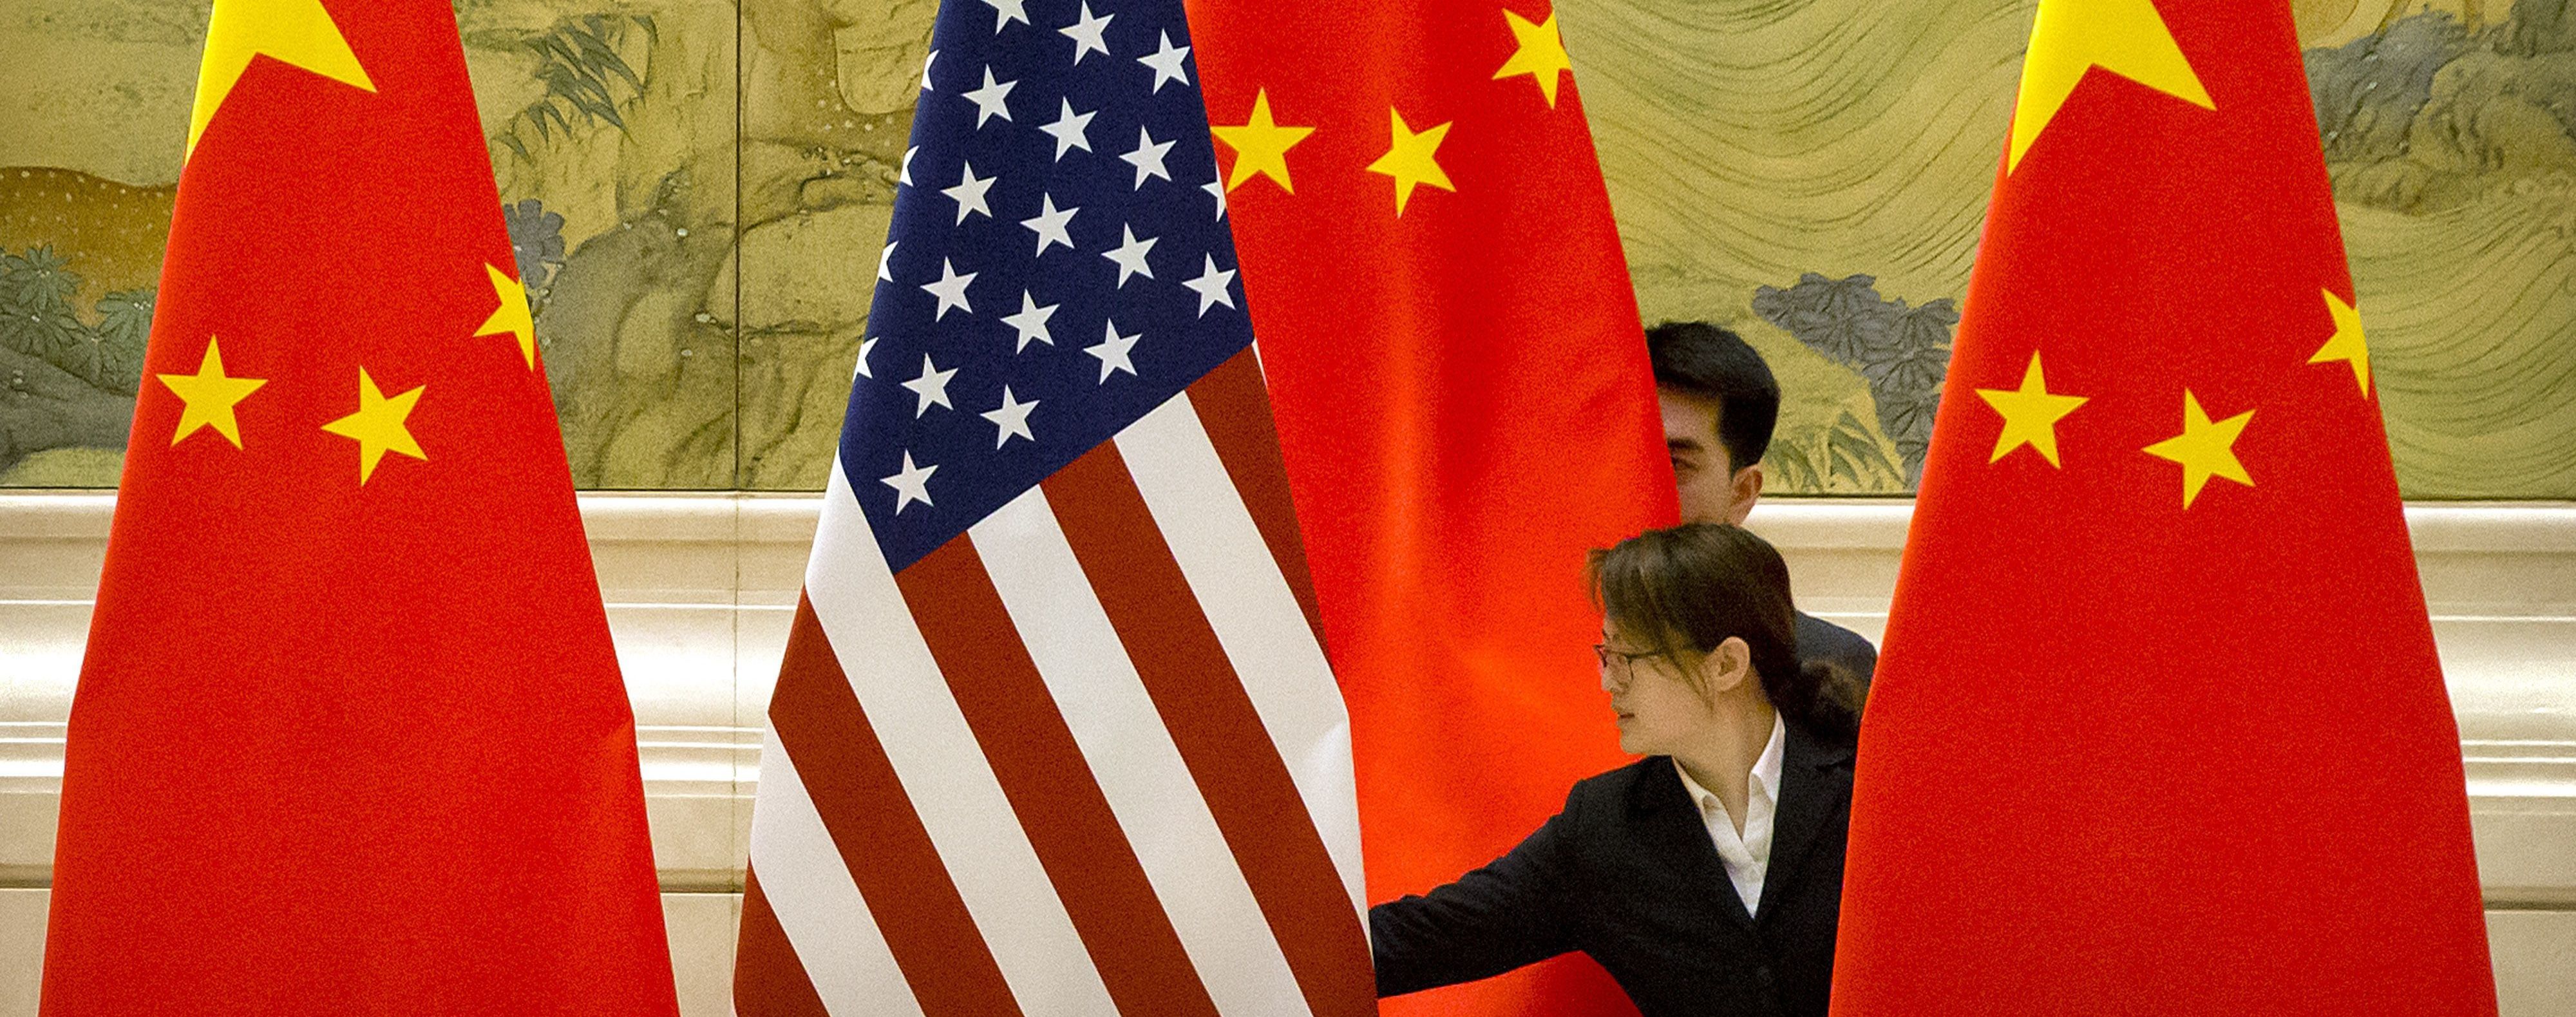 США та Китай домовилися відновити військові зв’язки - ЗМІ